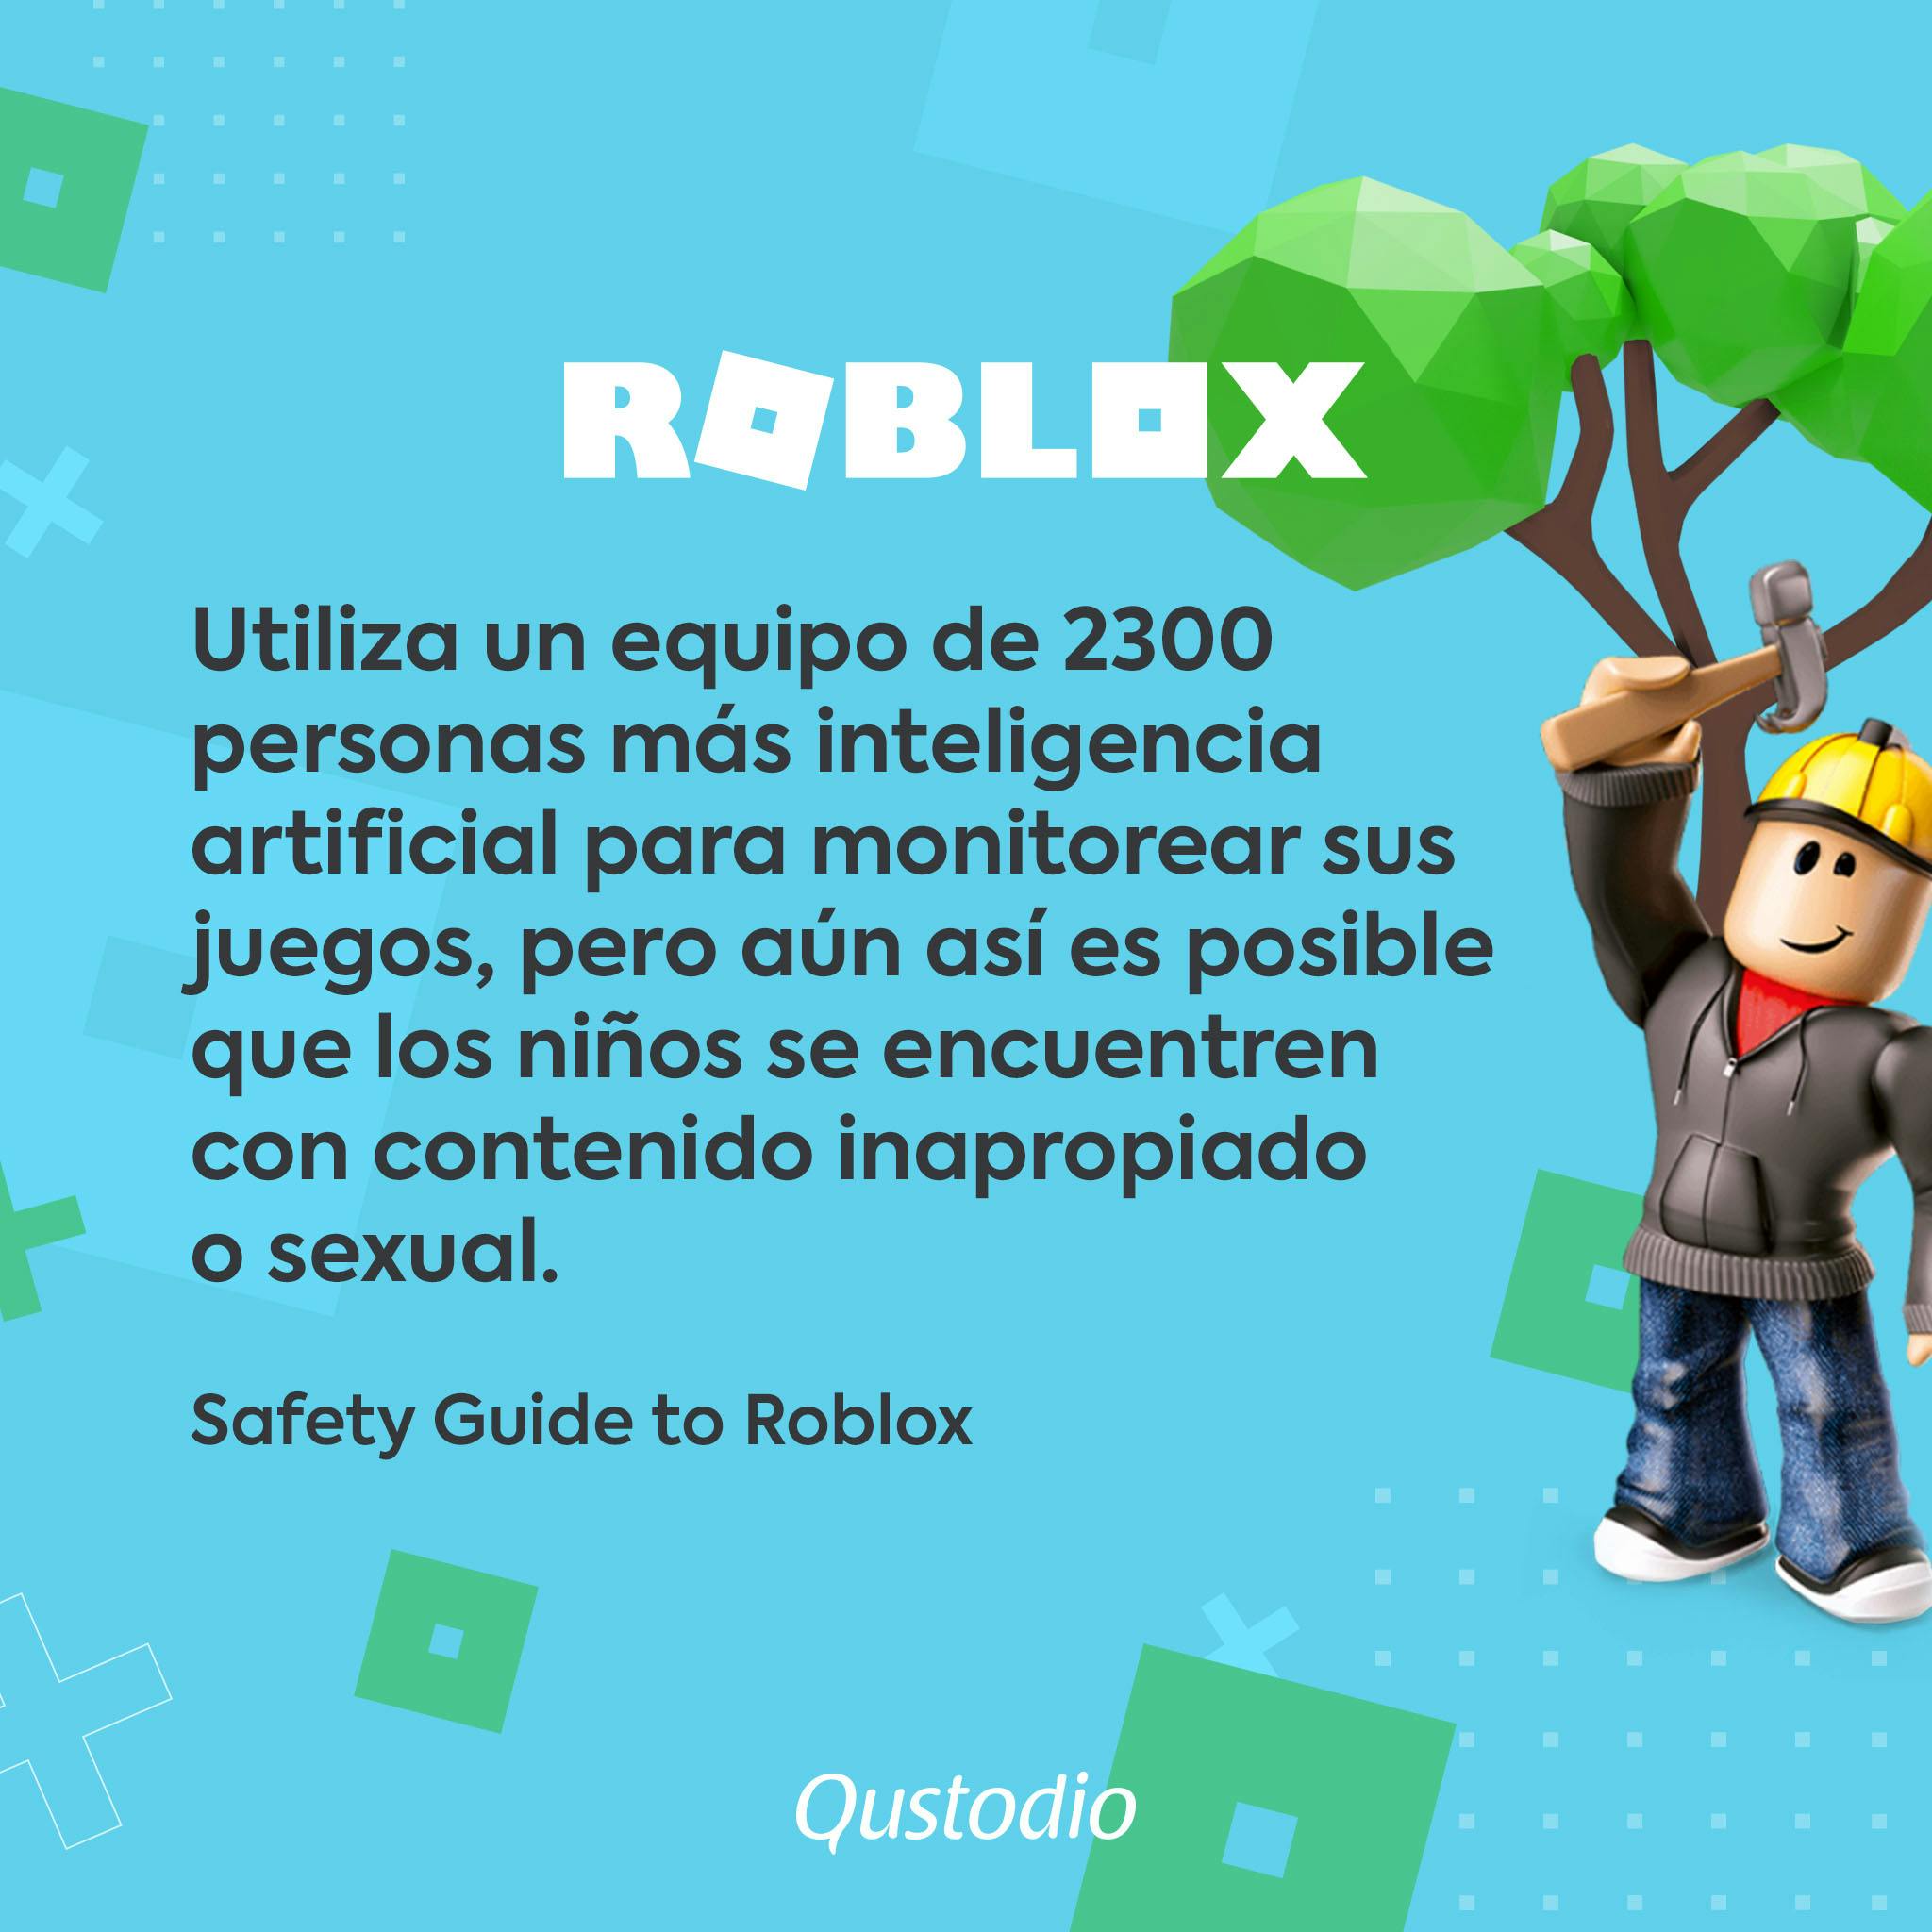 Es Roblox Seguro Para Nuestros Hijos Qustodio - que es roblox en español